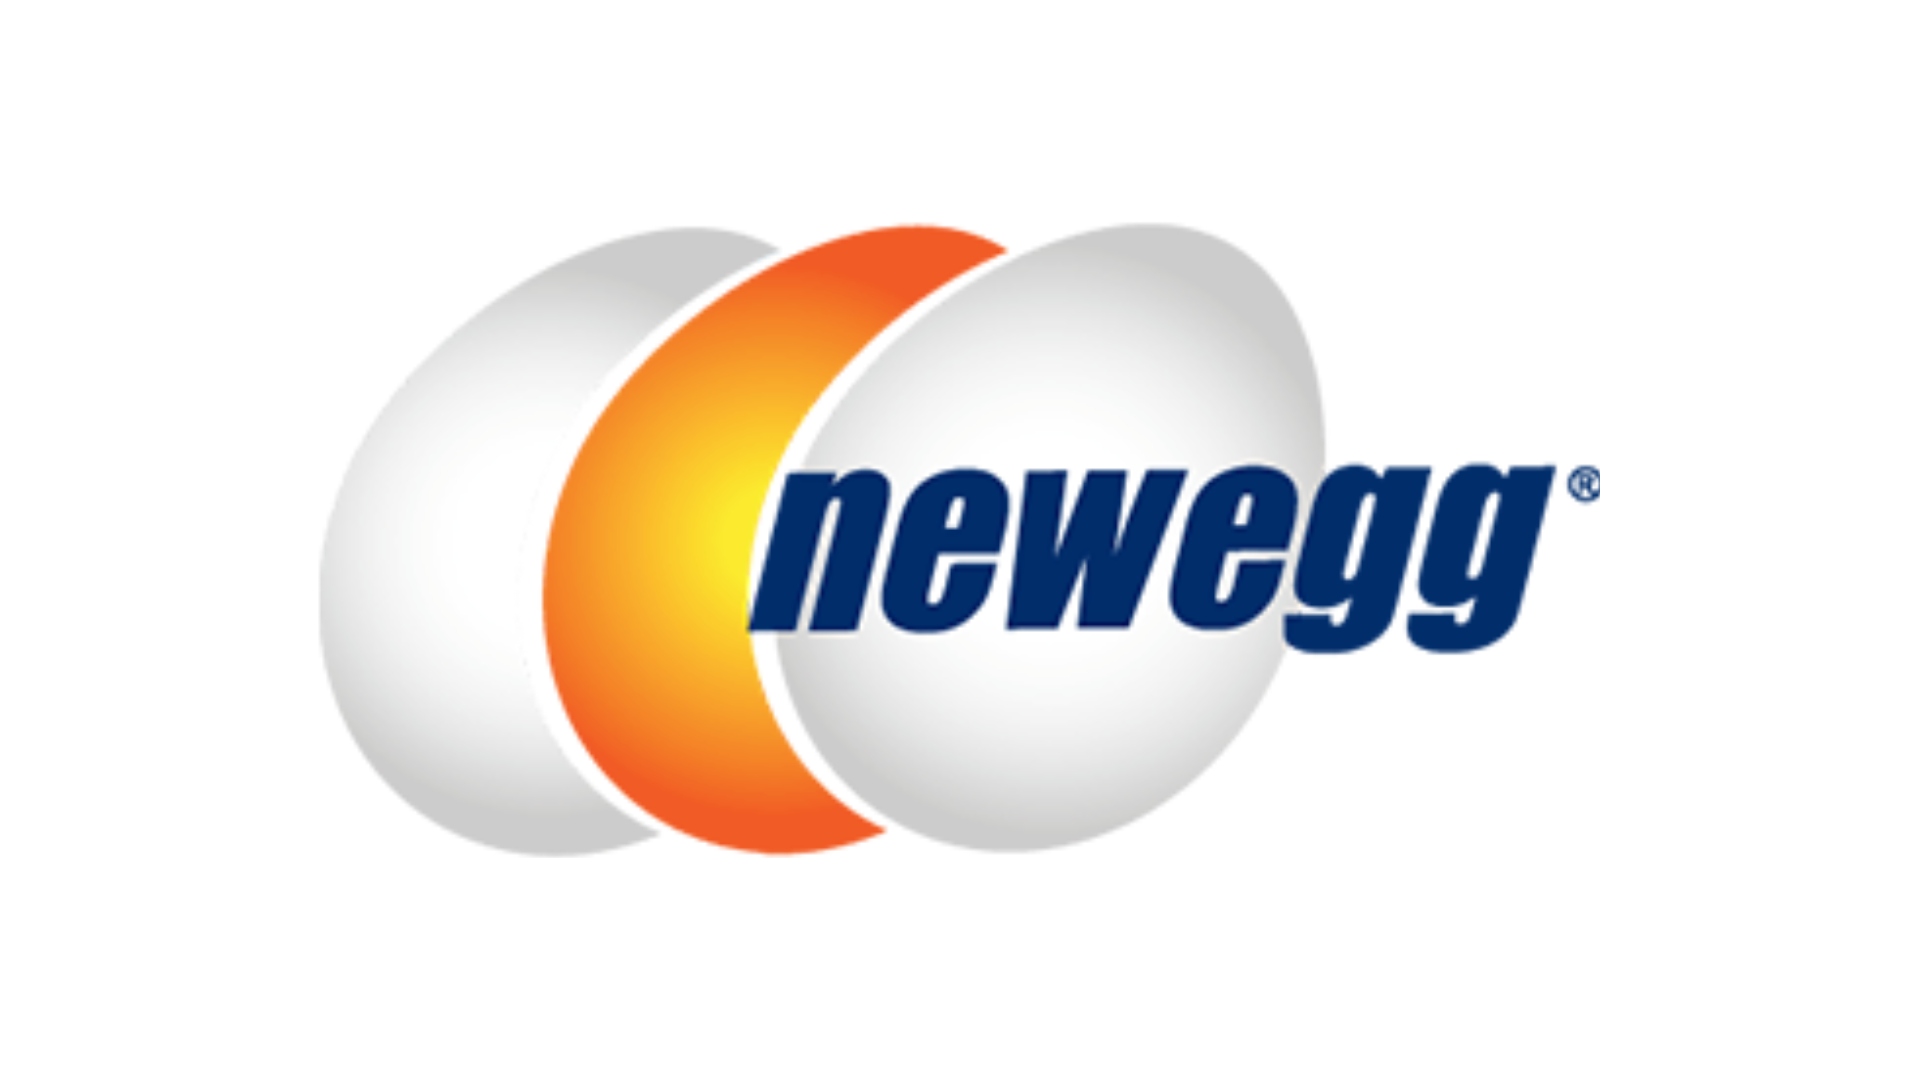 I migliori siti Web per build PC personalizzati, numero 2: Newegg. Il logo è su uno sfondo bianco